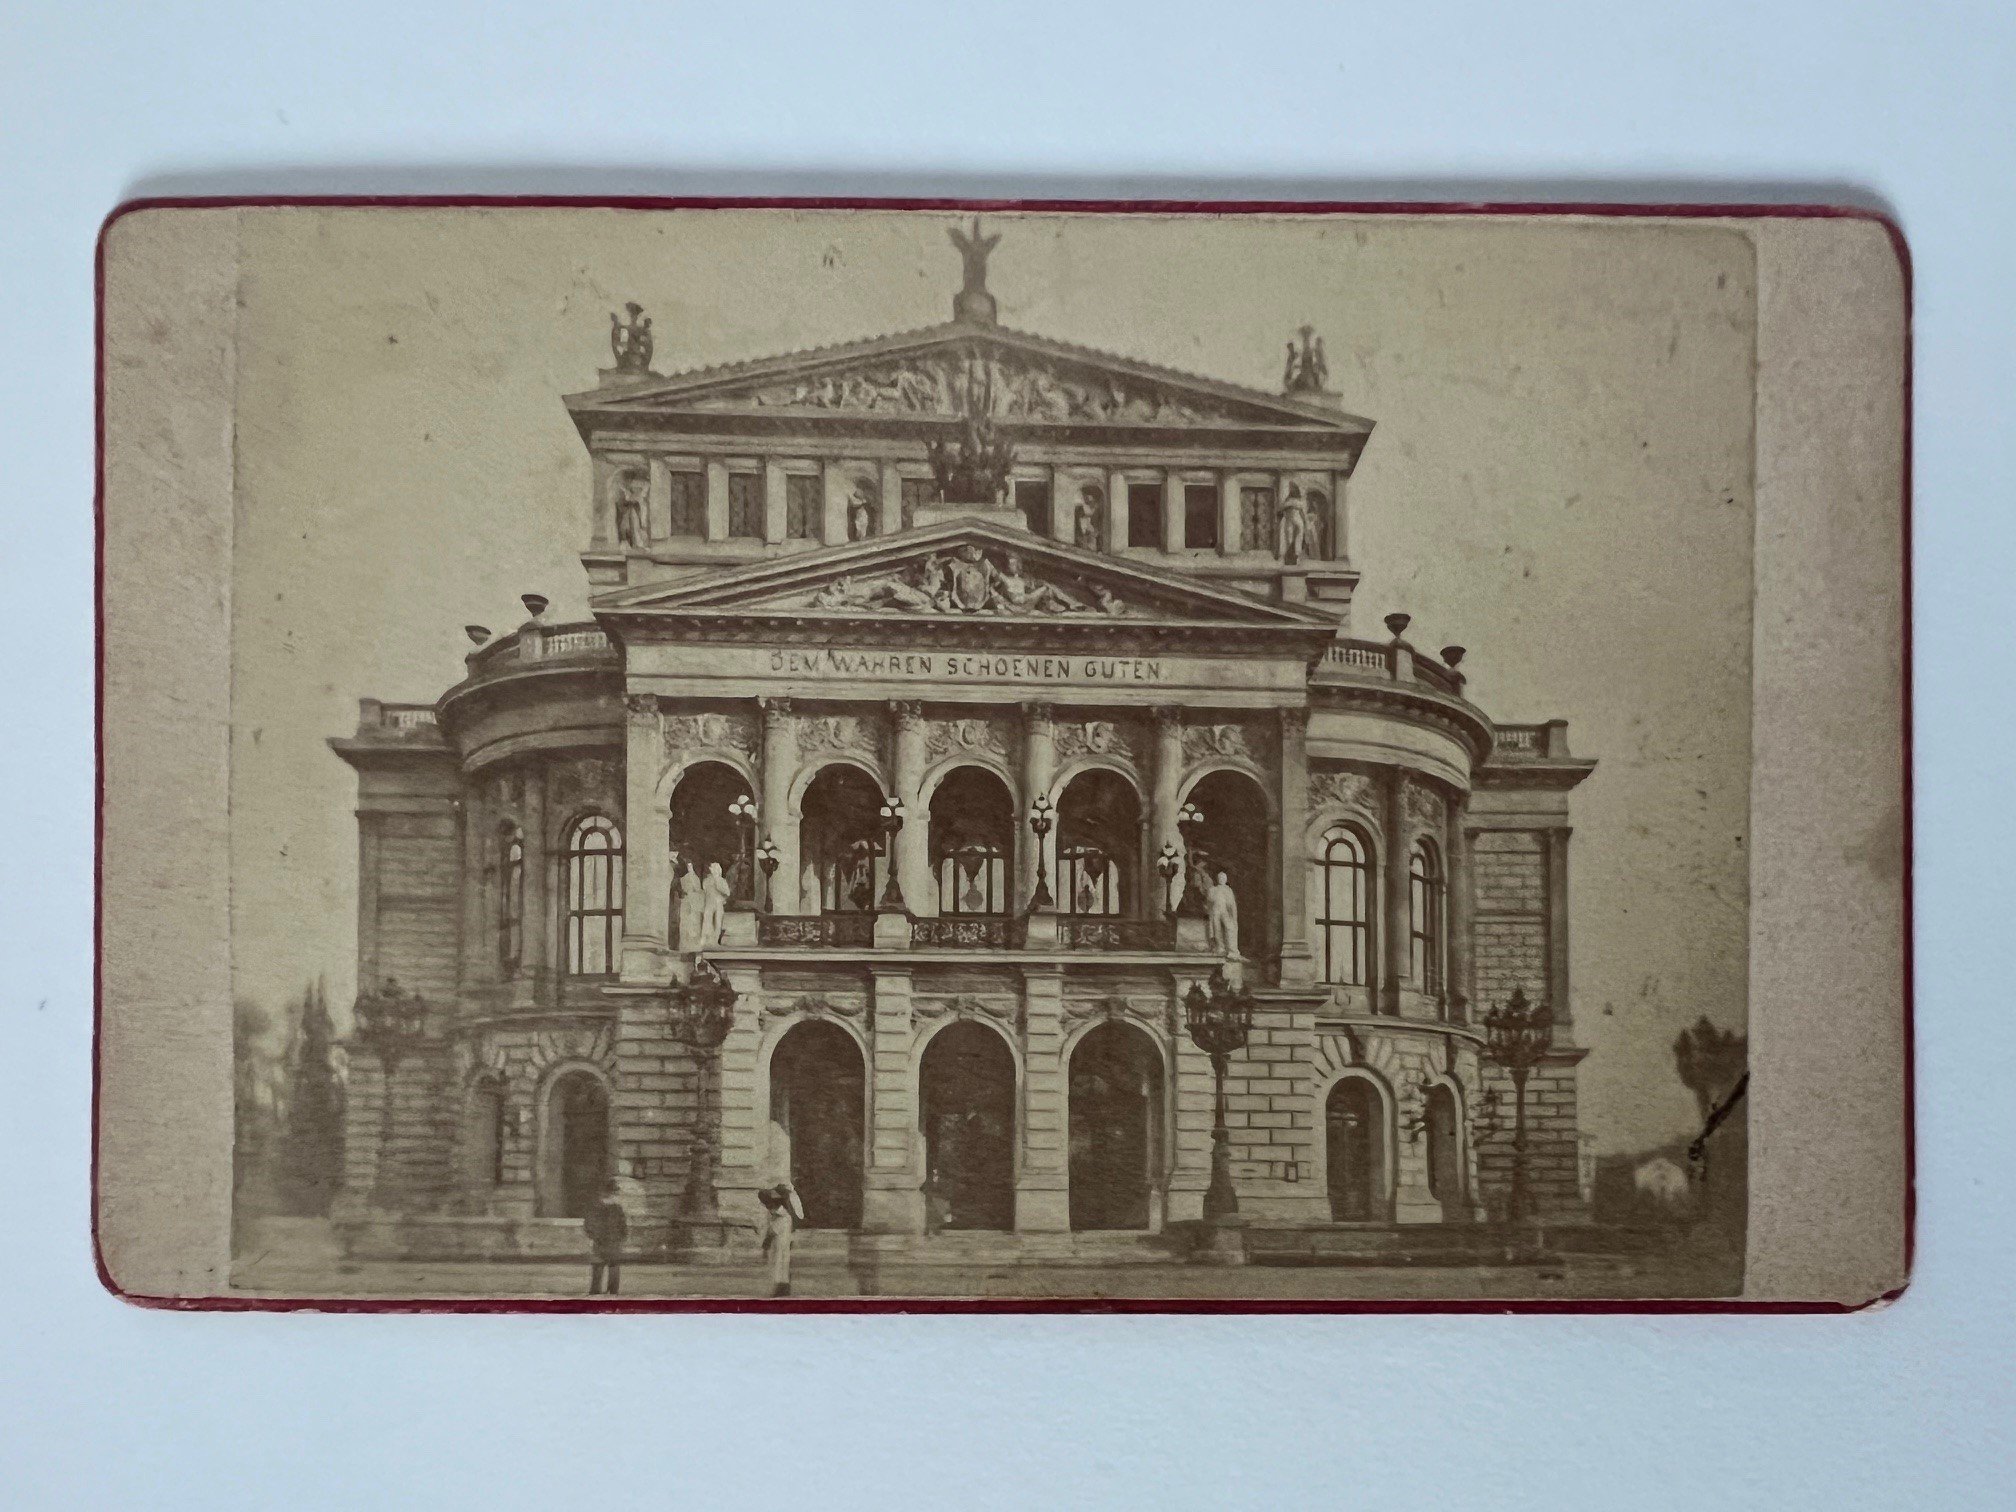 CdV, Unbekannter Fotograf, Frankfurt, Die Oper, ca. 1880. (Taunus-Rhein-Main - Regionalgeschichtliche Sammlung Dr. Stefan Naas CC BY-NC-SA)